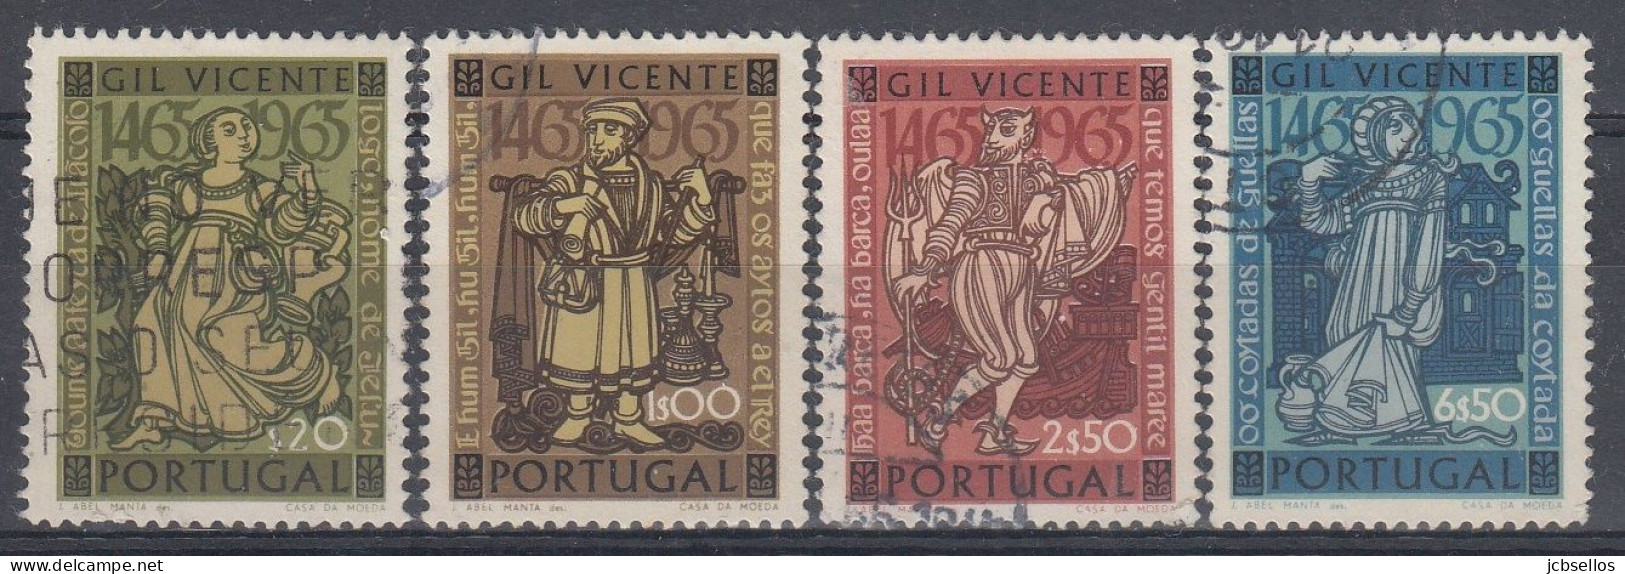 PORTUGAL 1965 Nº 977/980 USADO - Usado